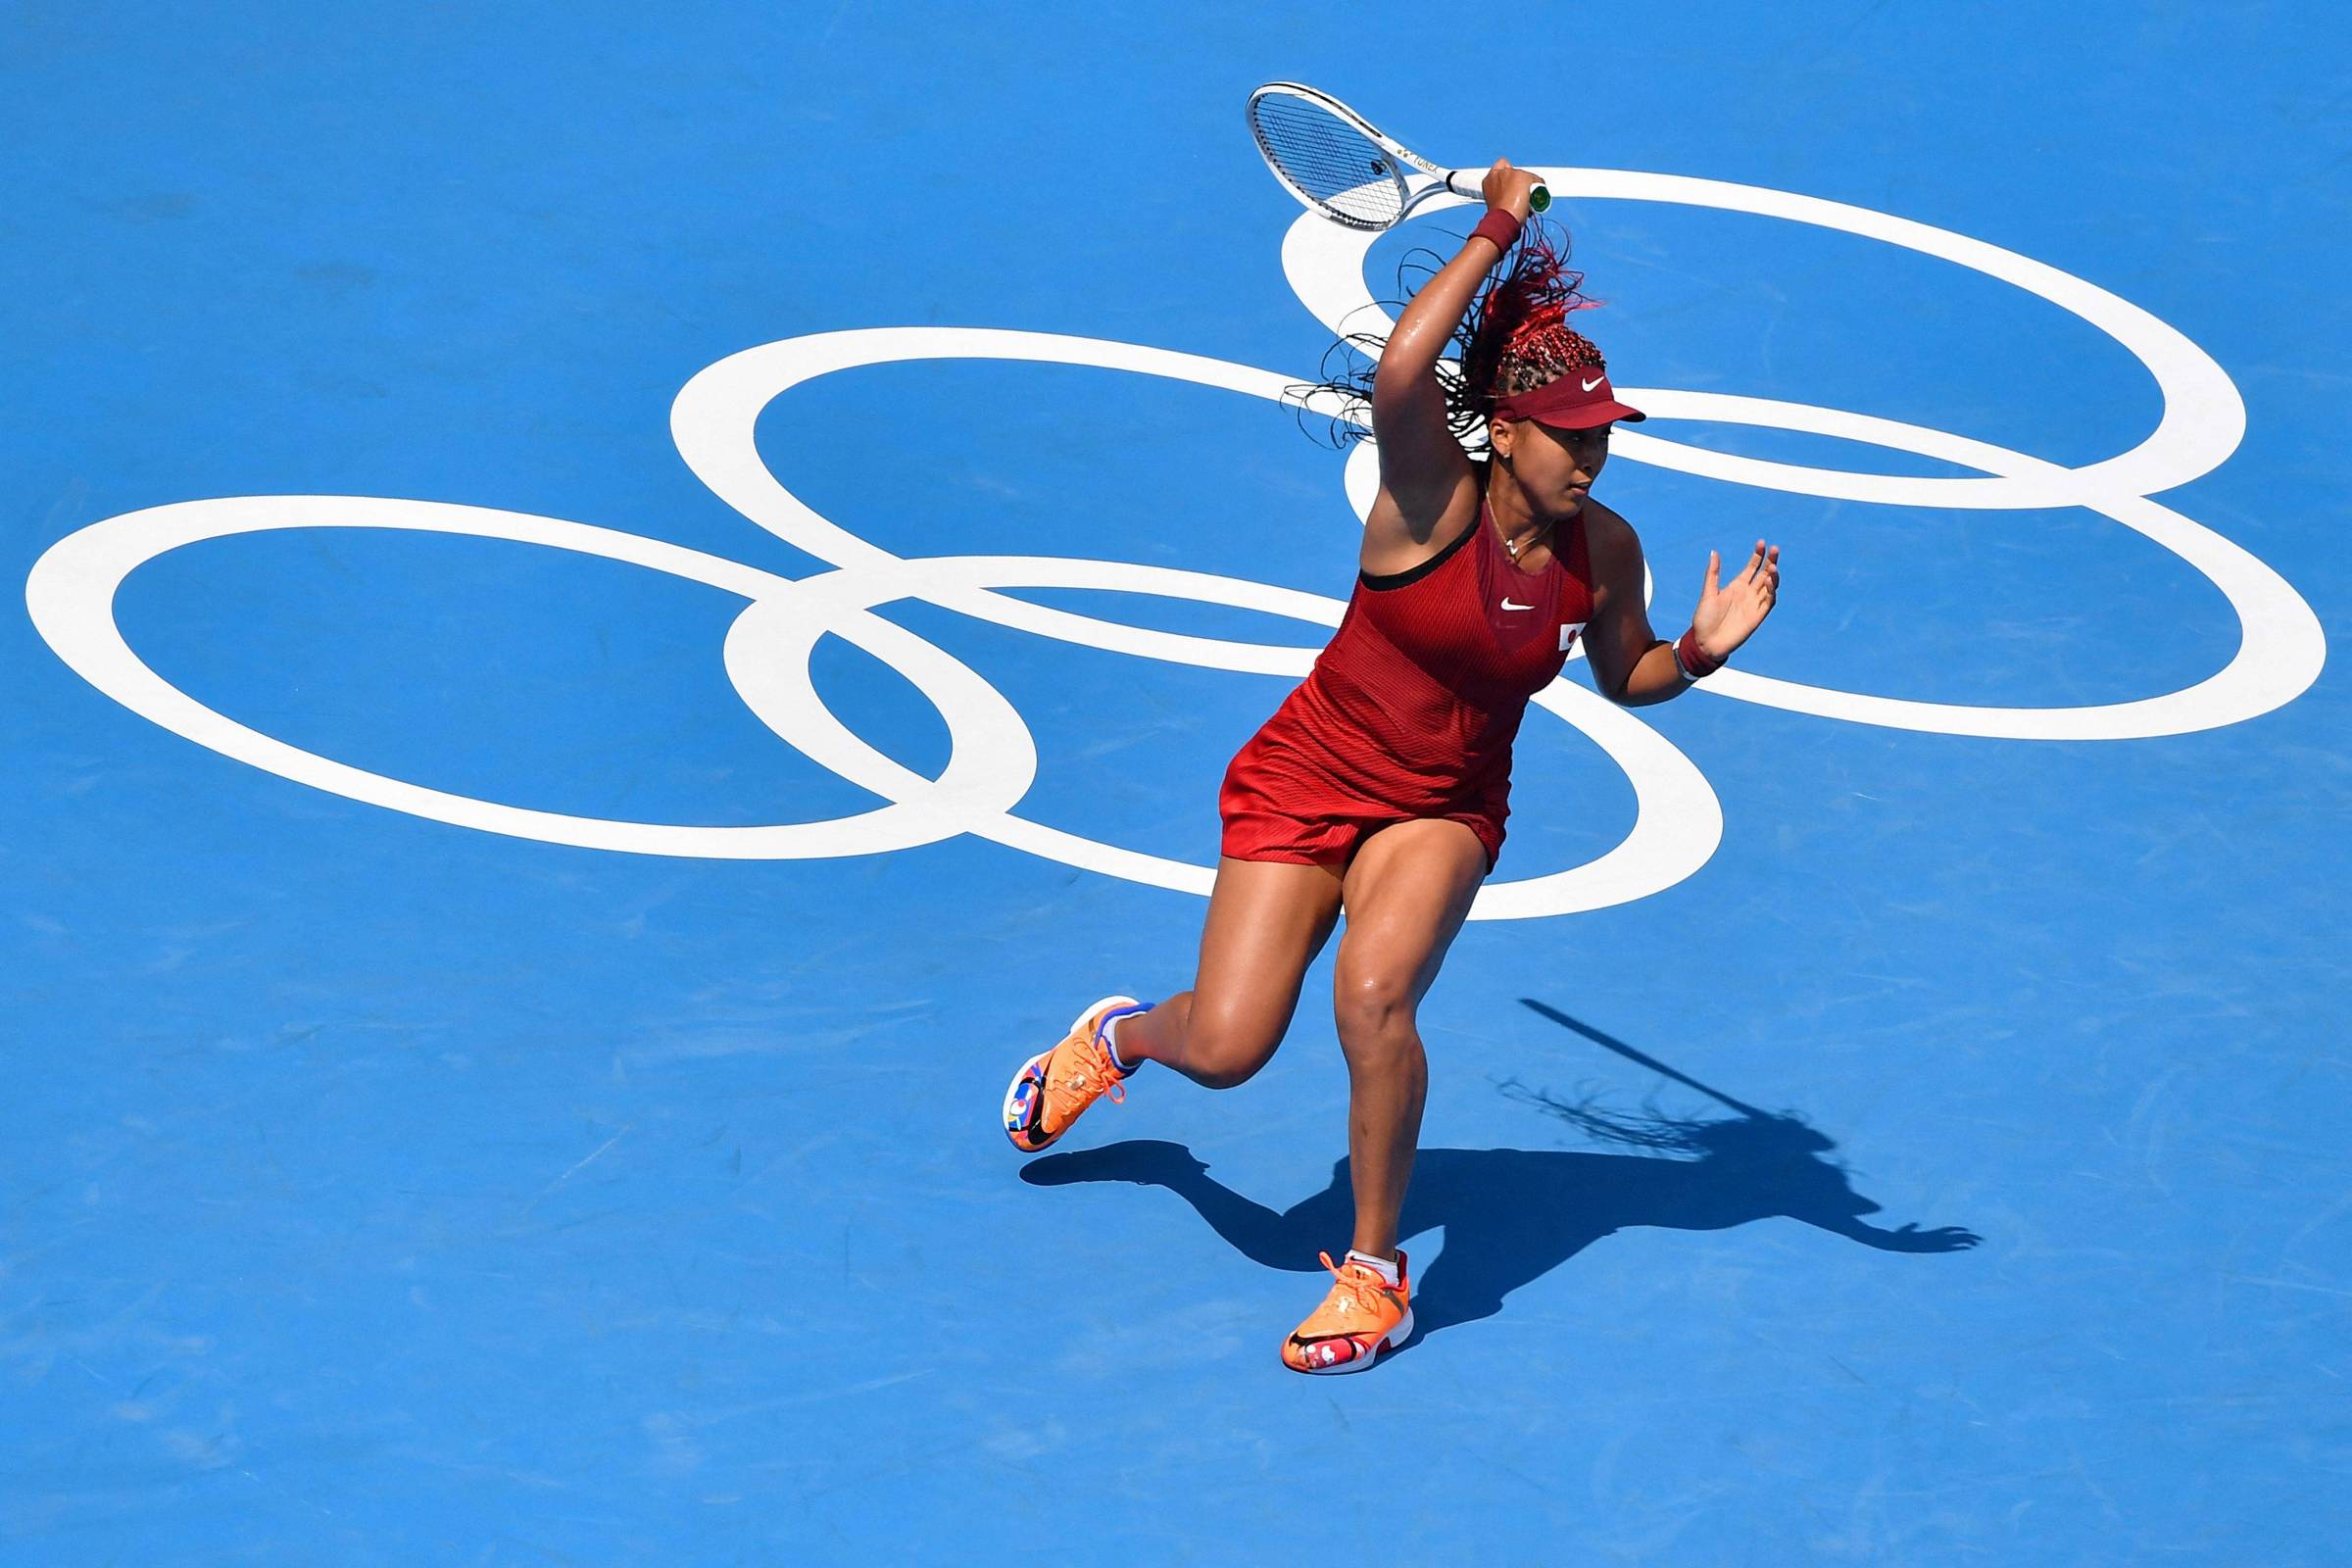 Tênis: diferenças nos sets entre homens e mulheres e busca por igualdade -  Esportes - Estado de Minas